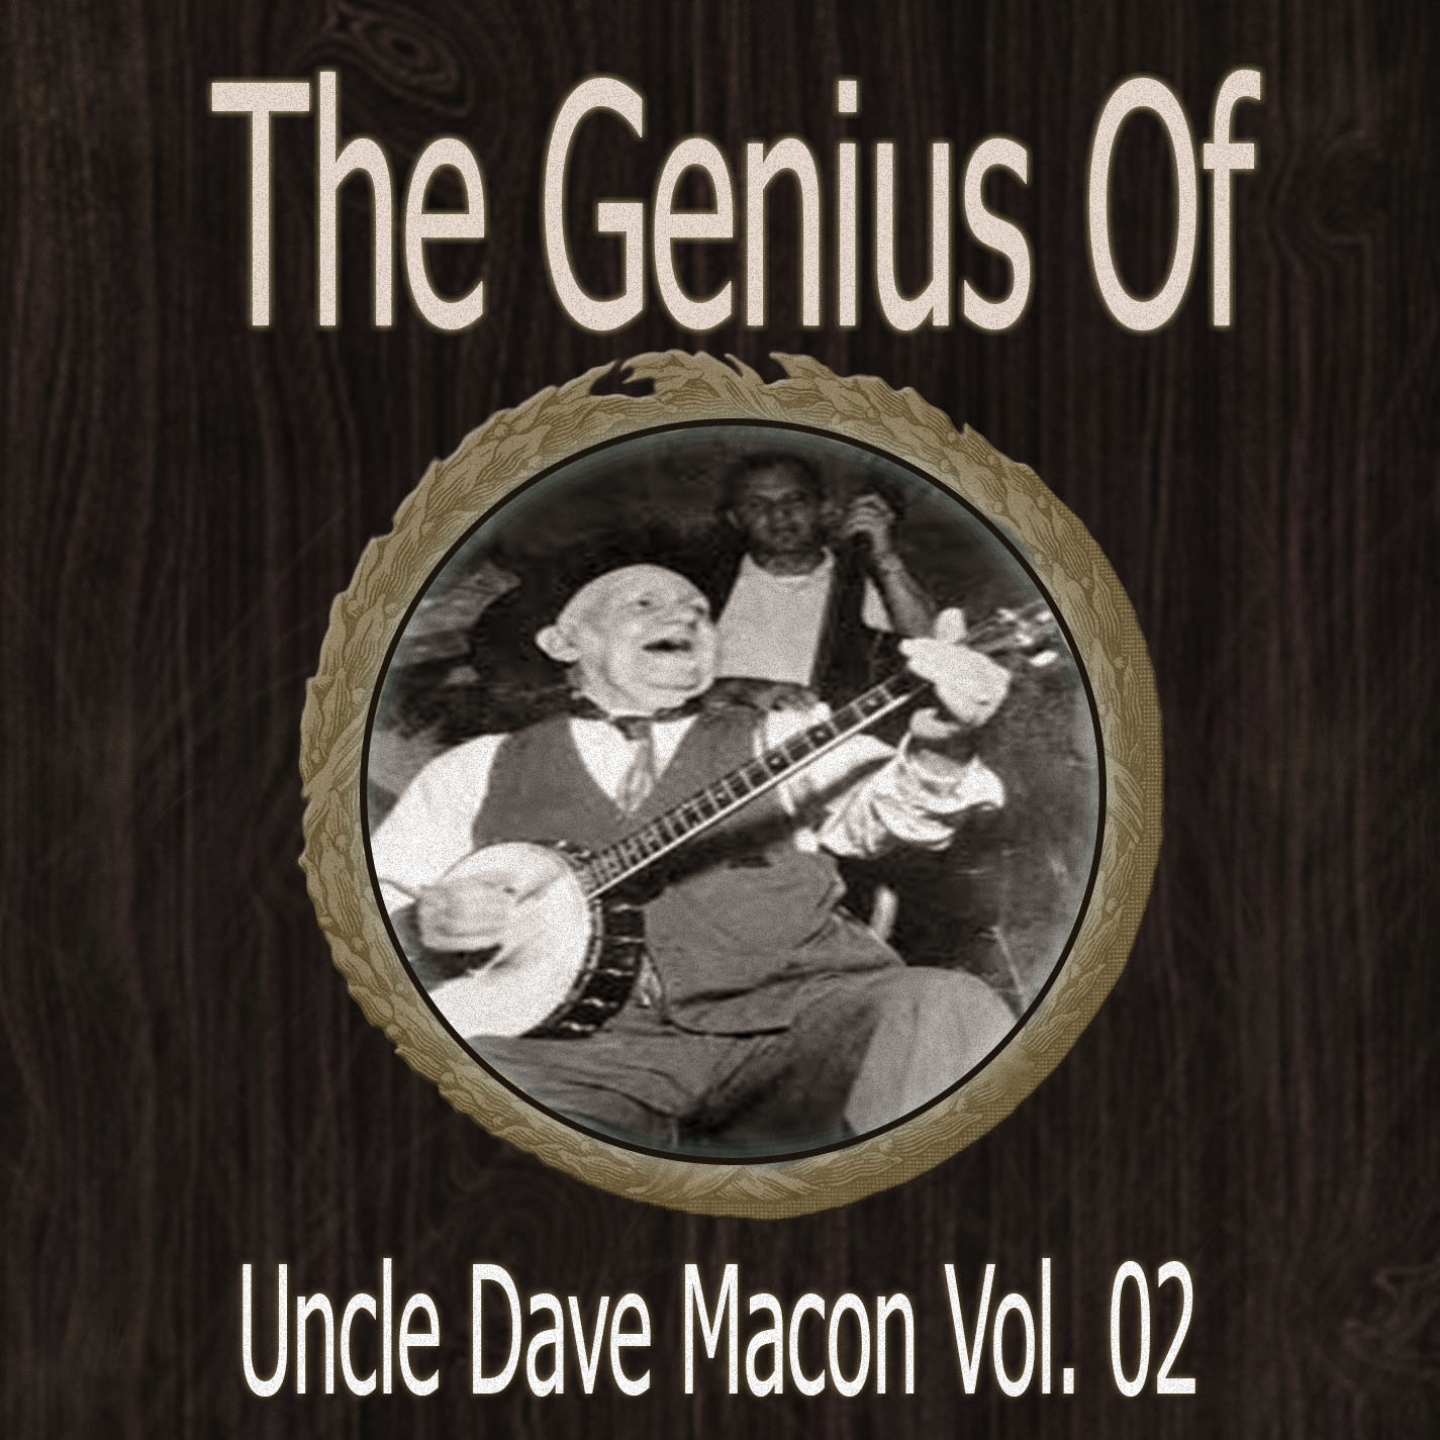 The Genius of Uncle Dave Macon Vol 02